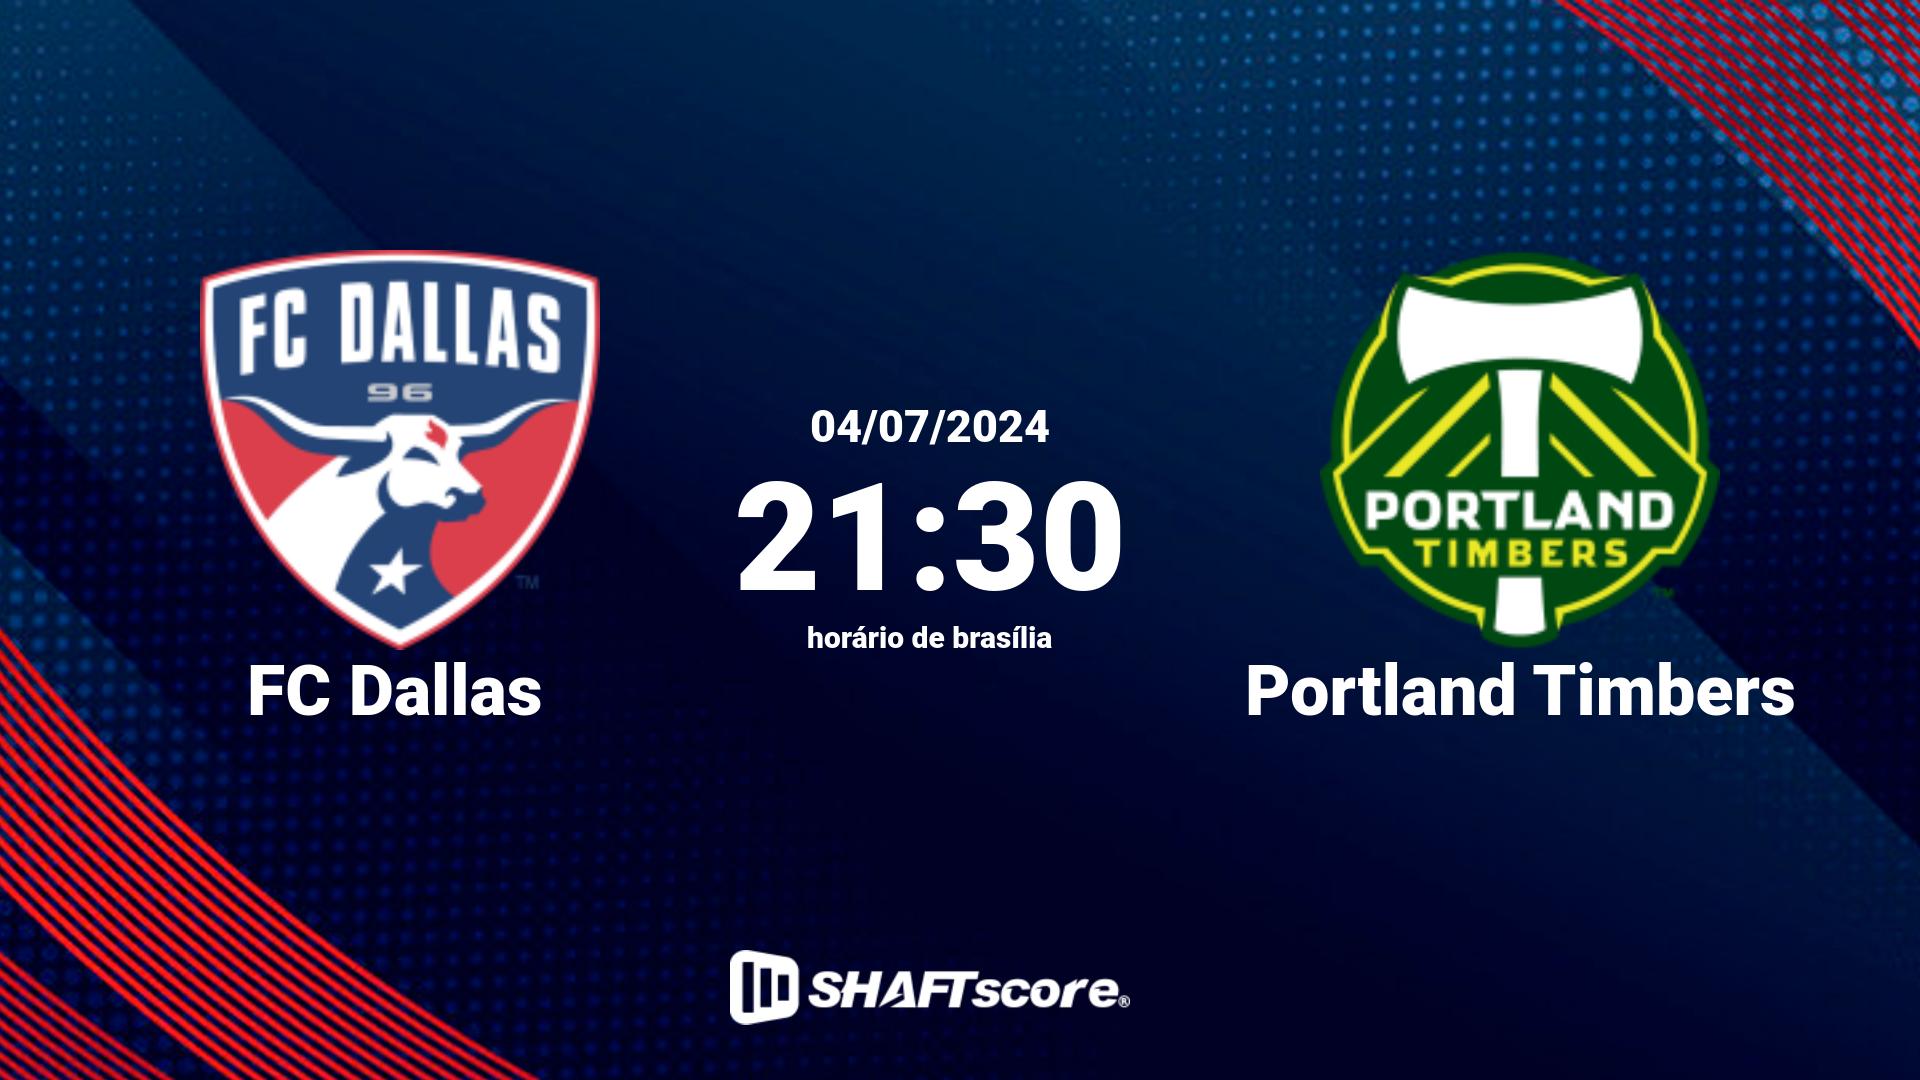 Estatísticas do jogo FC Dallas vs Portland Timbers 04.07 21:30